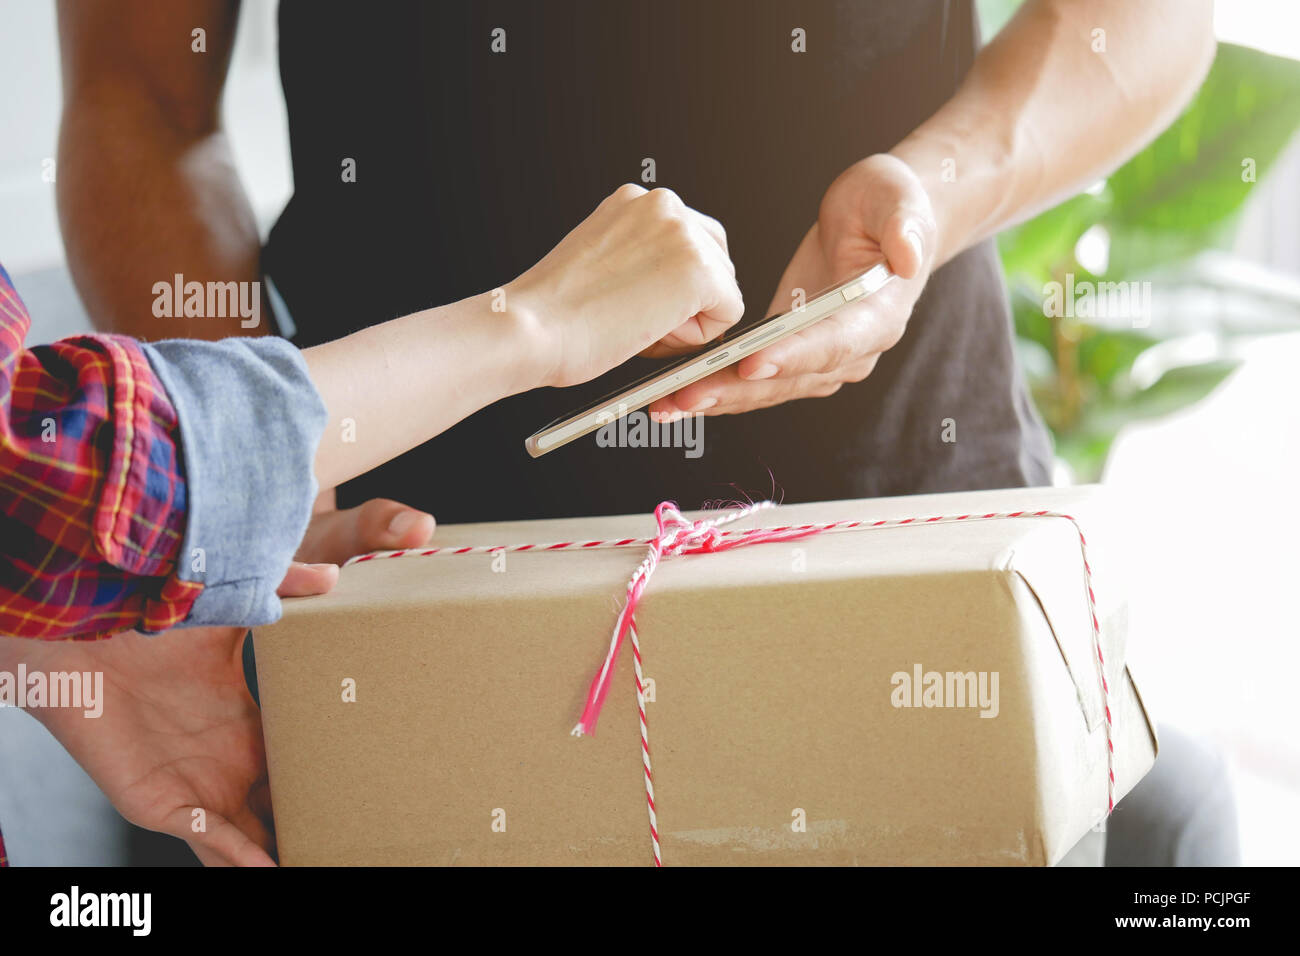 Frau anhängen Signatur unterschreiben auf dem Smartphone nach Kartons von Delivery Man shopping erhalten Stockfoto